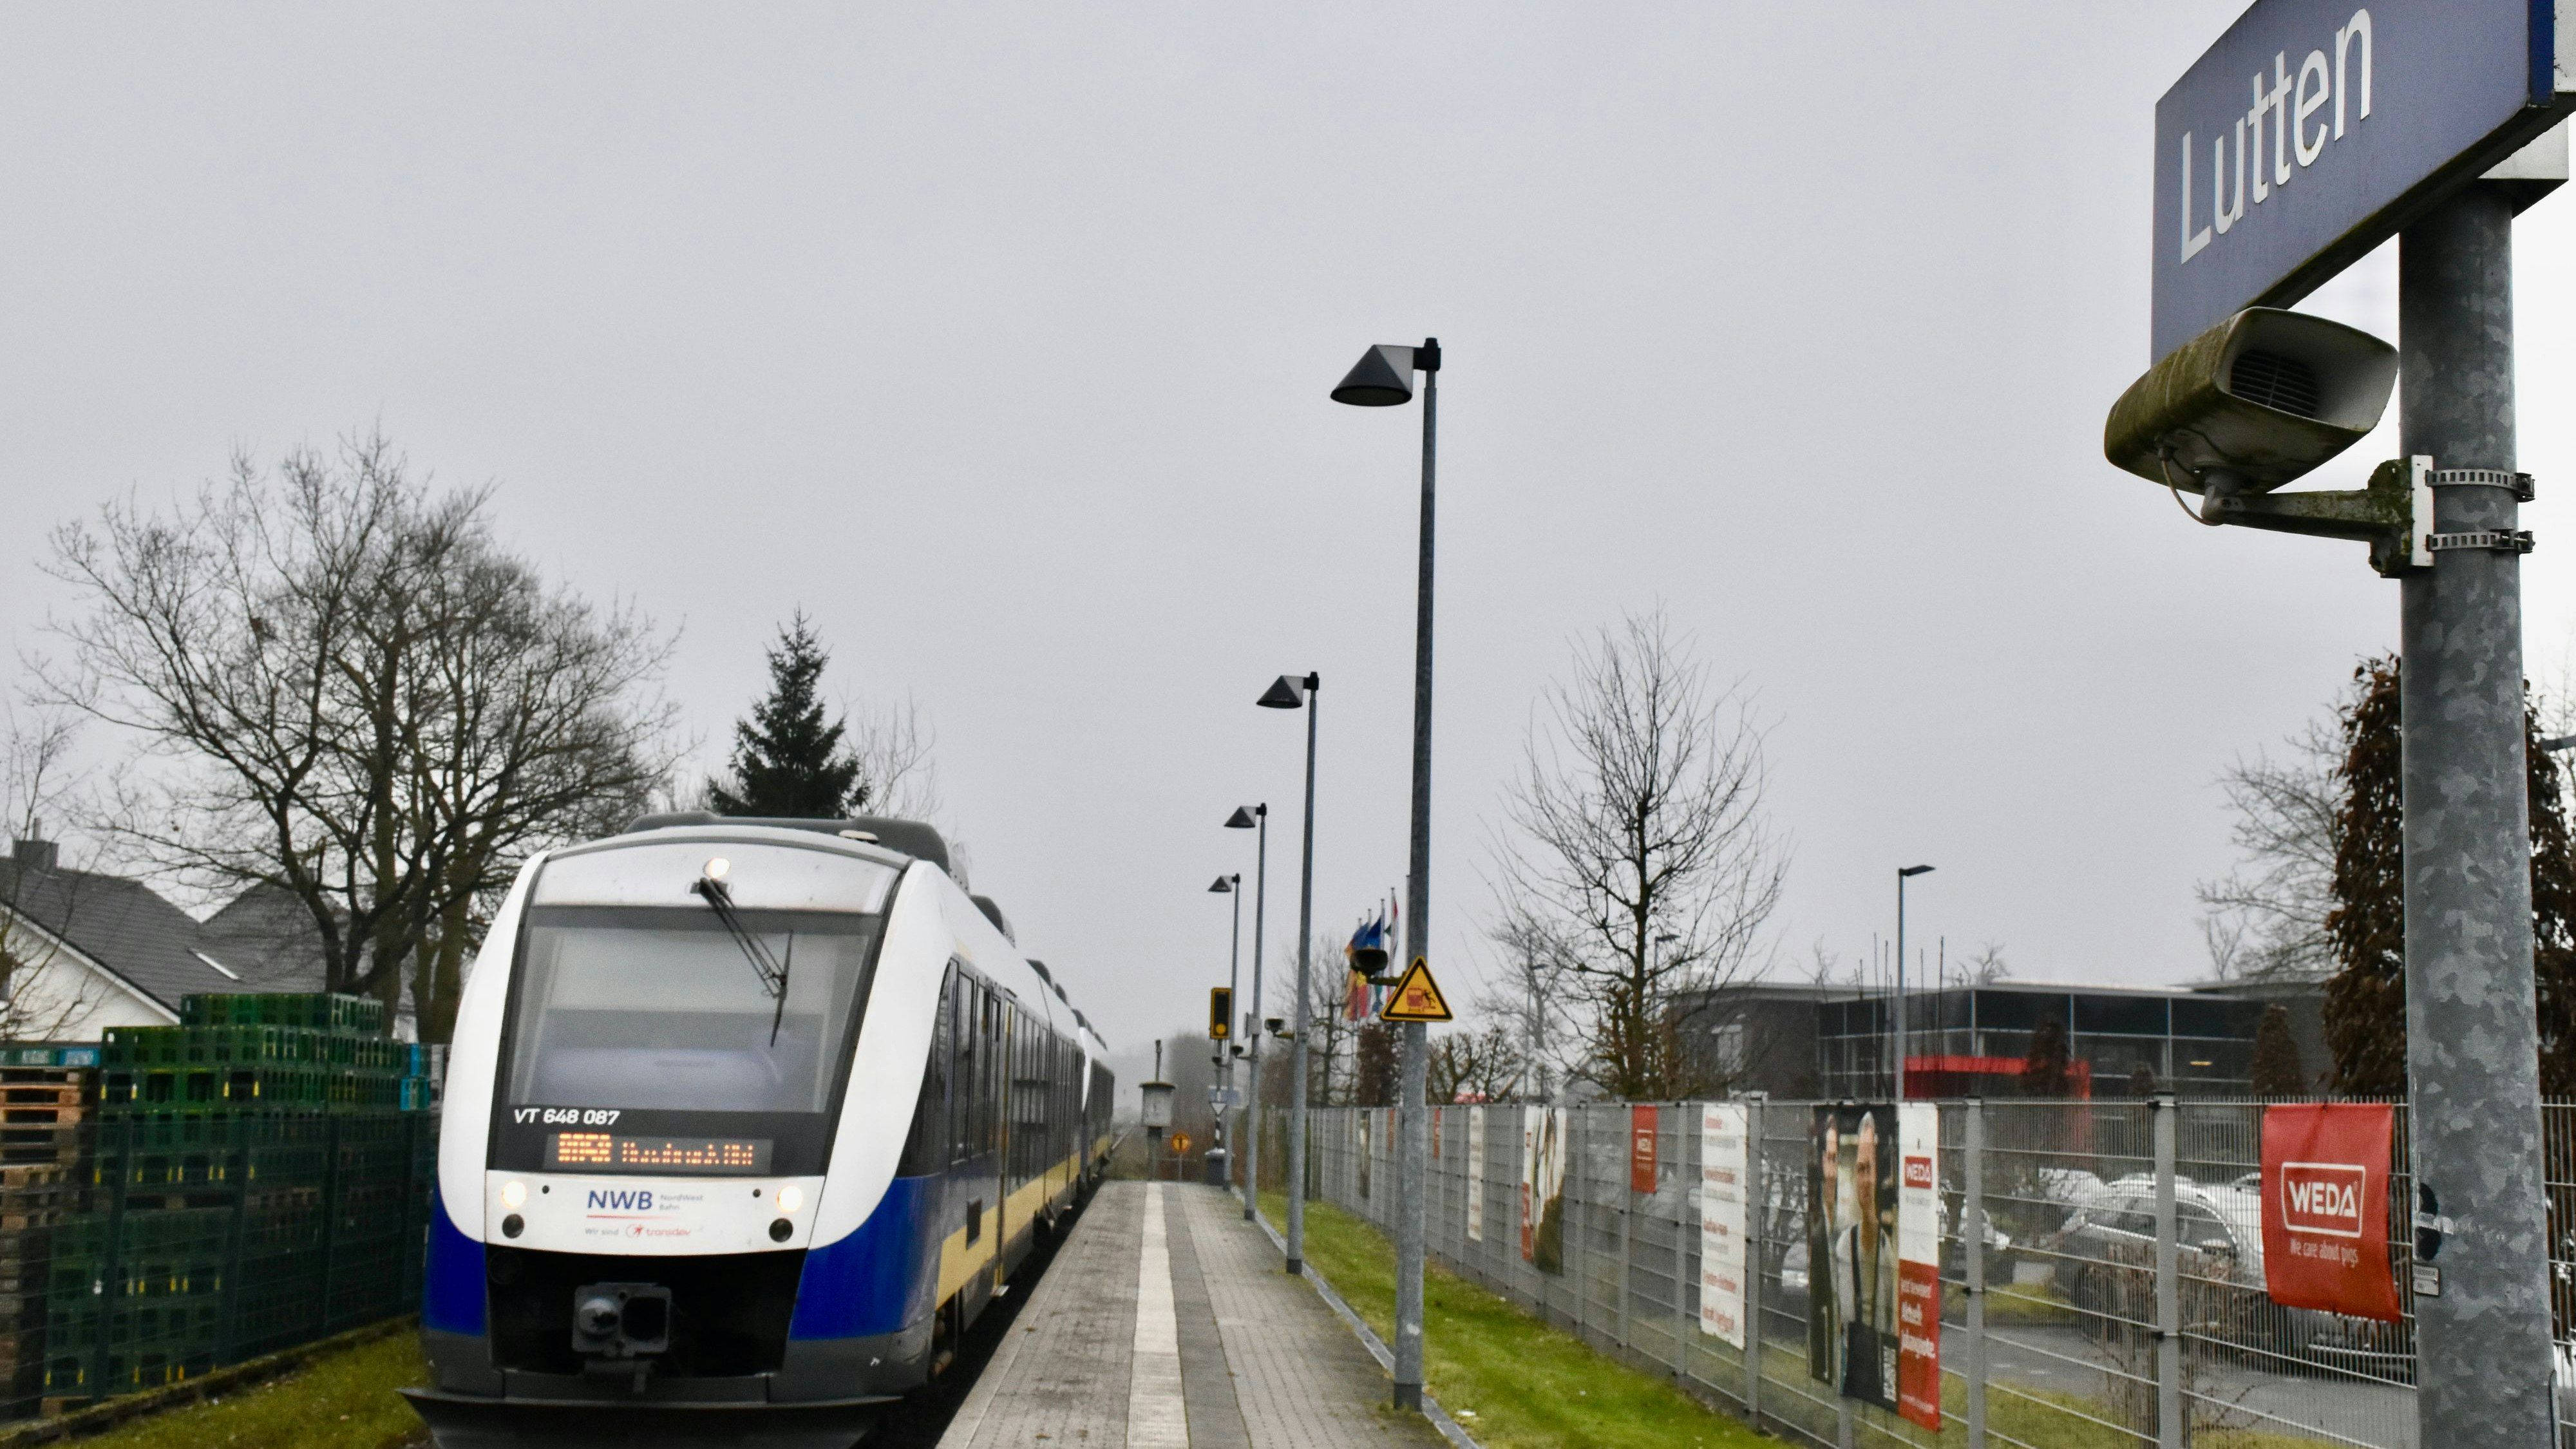 Im bislang eingleisigen Bahnhof von Lutten sollten sich laut Gutachten künftig zwei Züge begegnen können. Foto: Berg